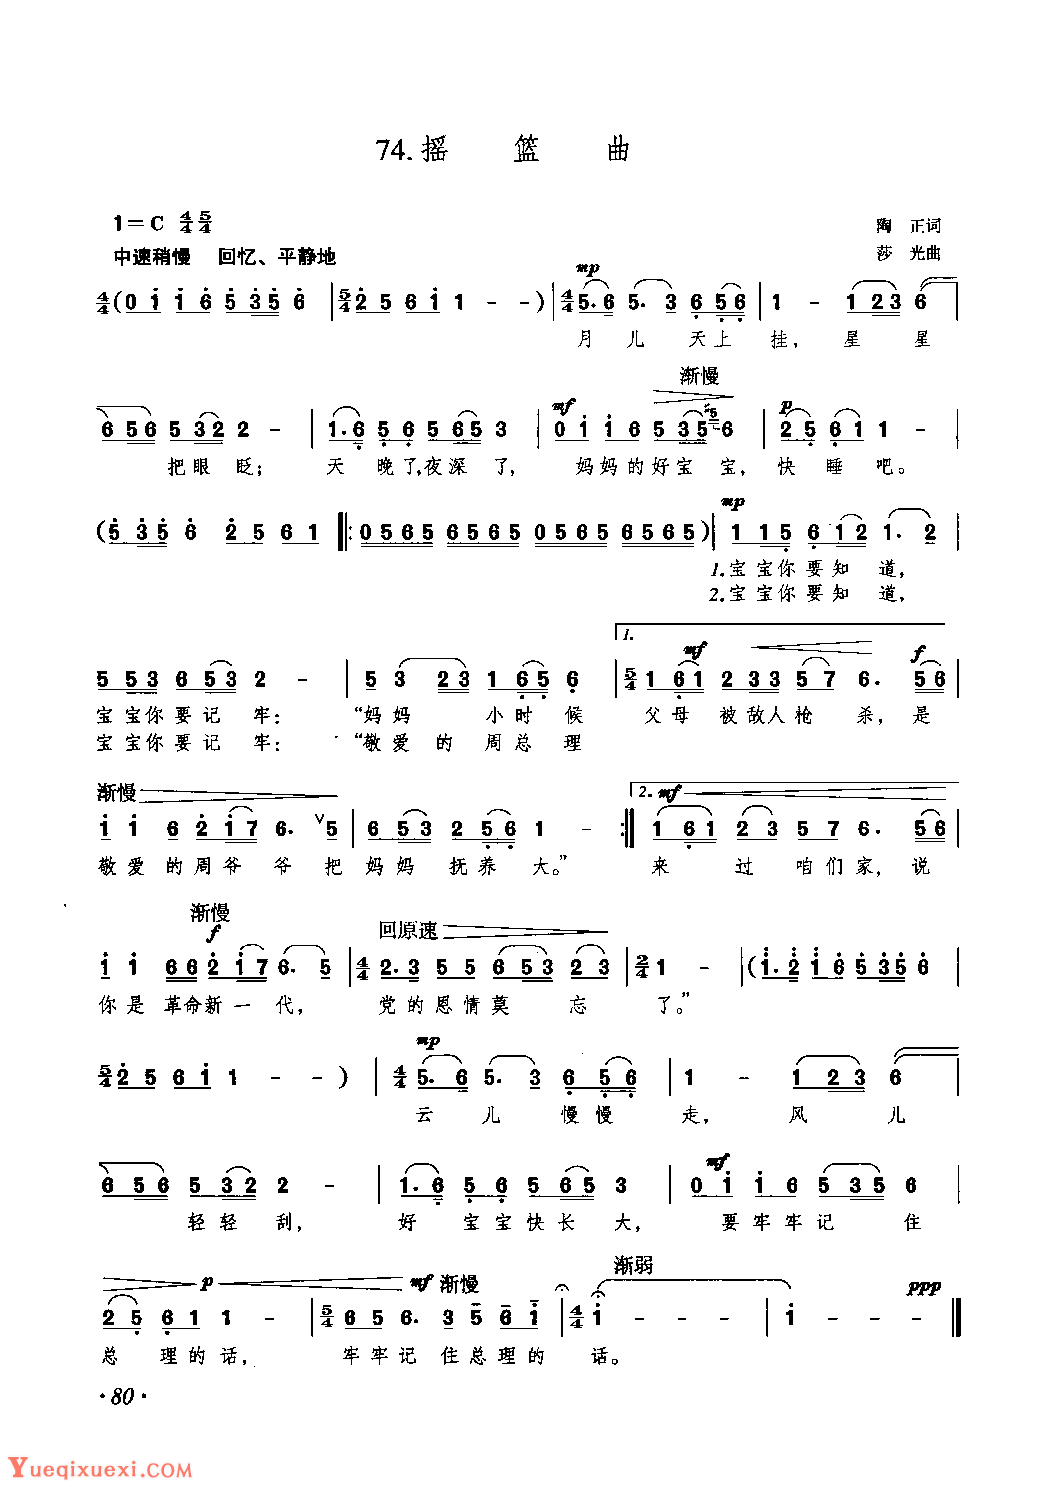 摇篮曲_勃拉姆斯钢琴曲谱，于斯课堂精心出品。于斯曲谱大全，钢琴谱，简谱，五线谱尽在其中。